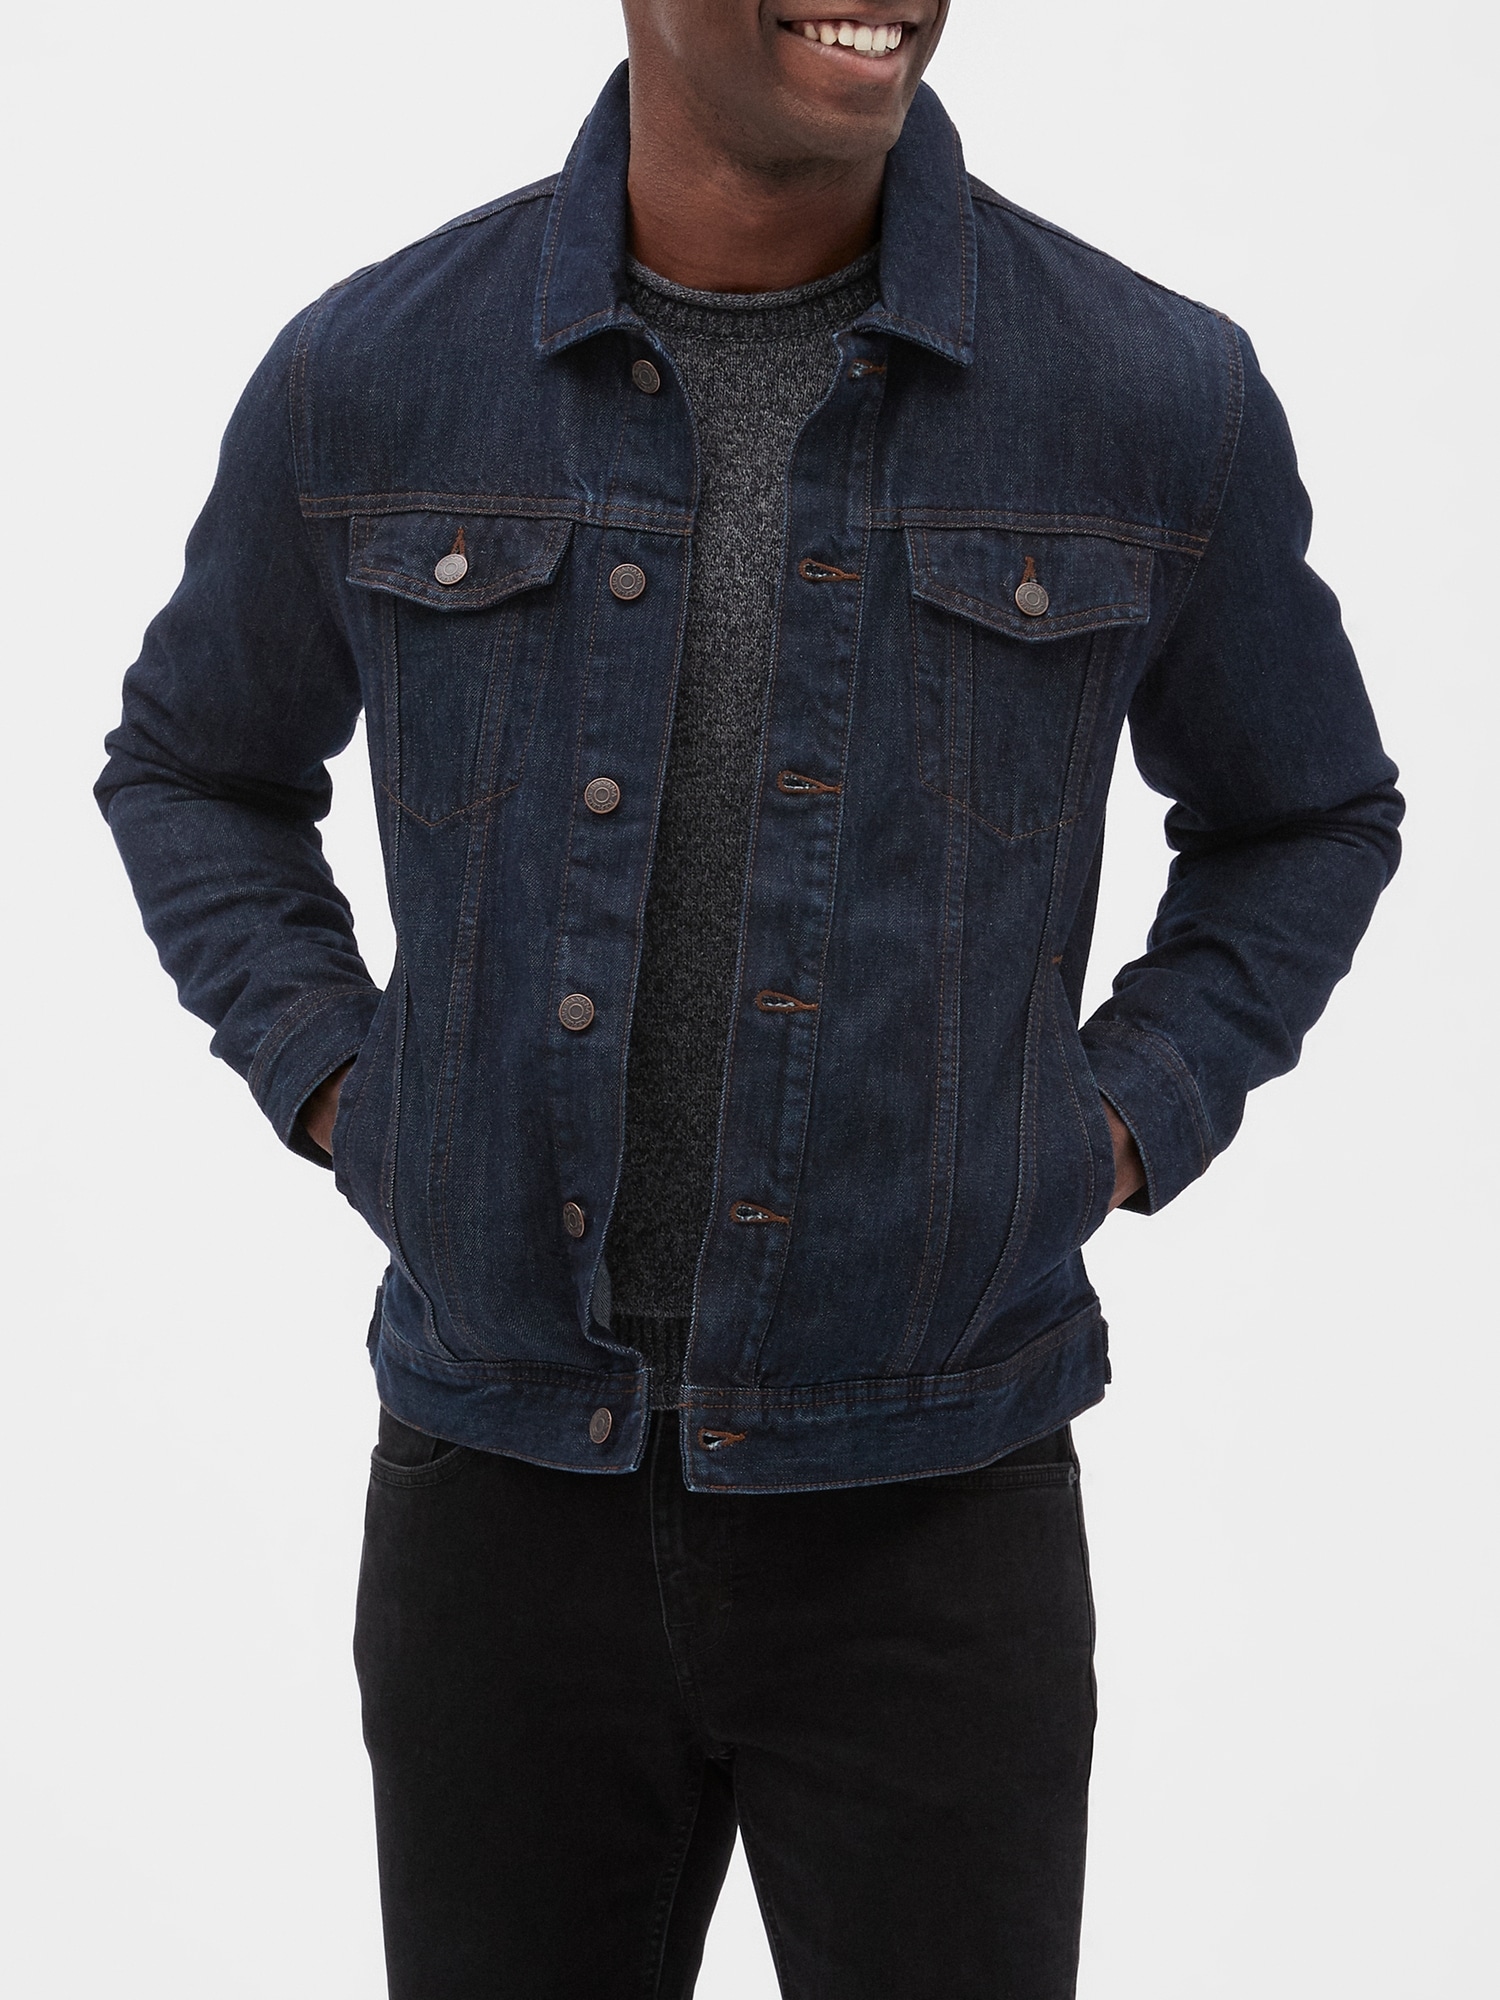 gray jean jacket